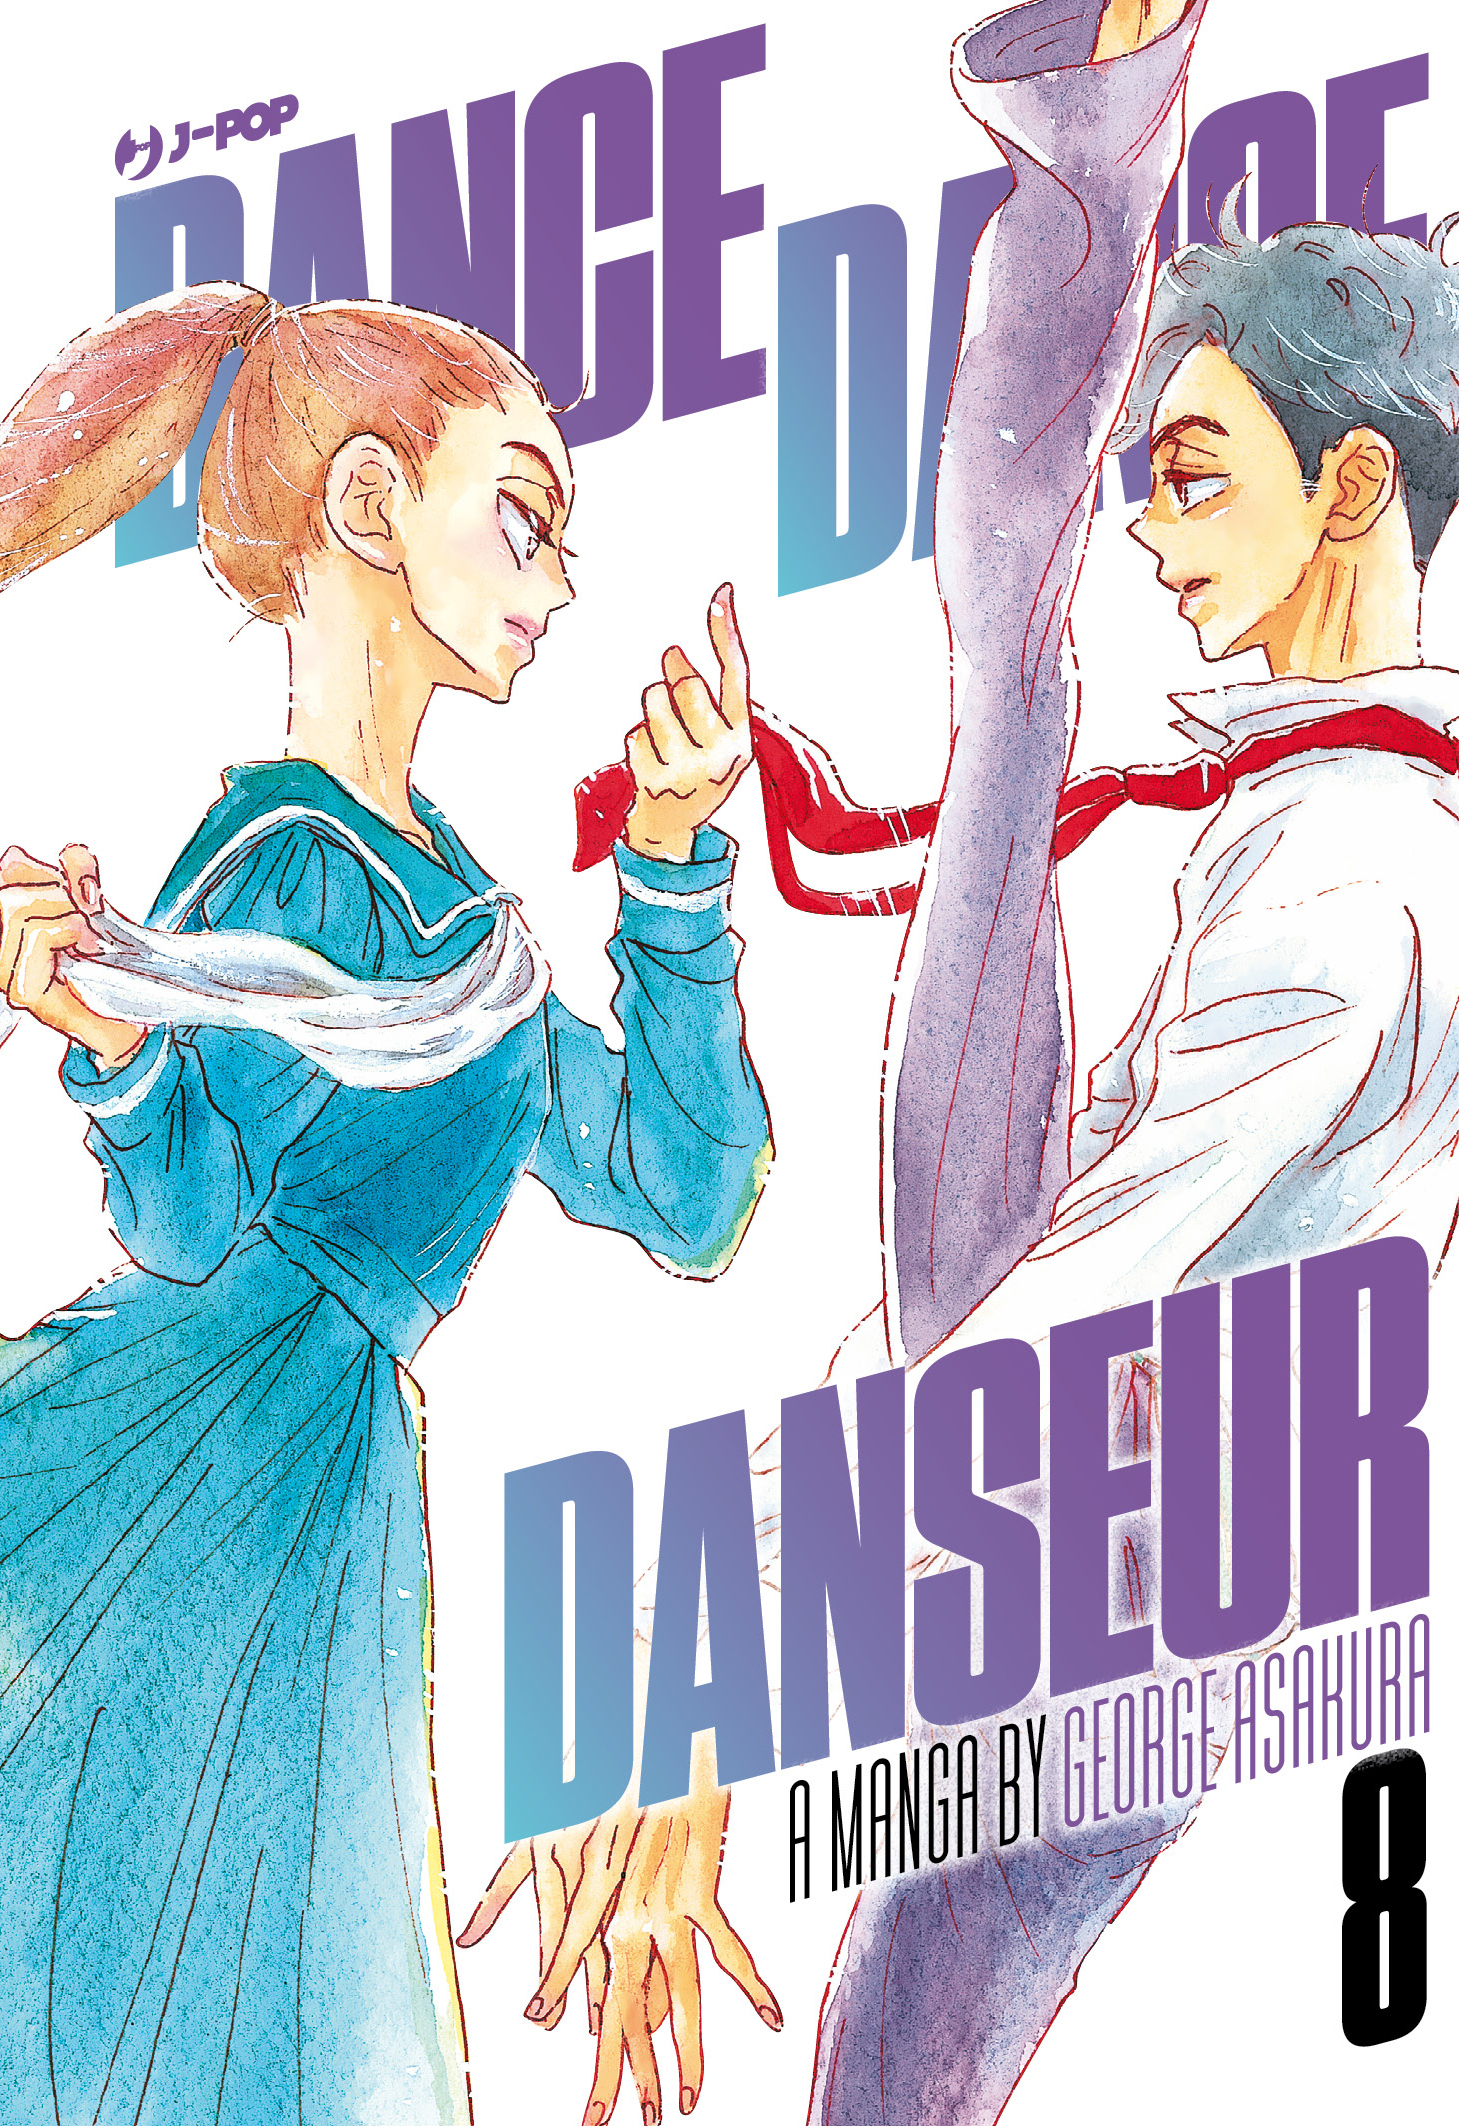 JPOP DANCE DANCE DANSEUR #008